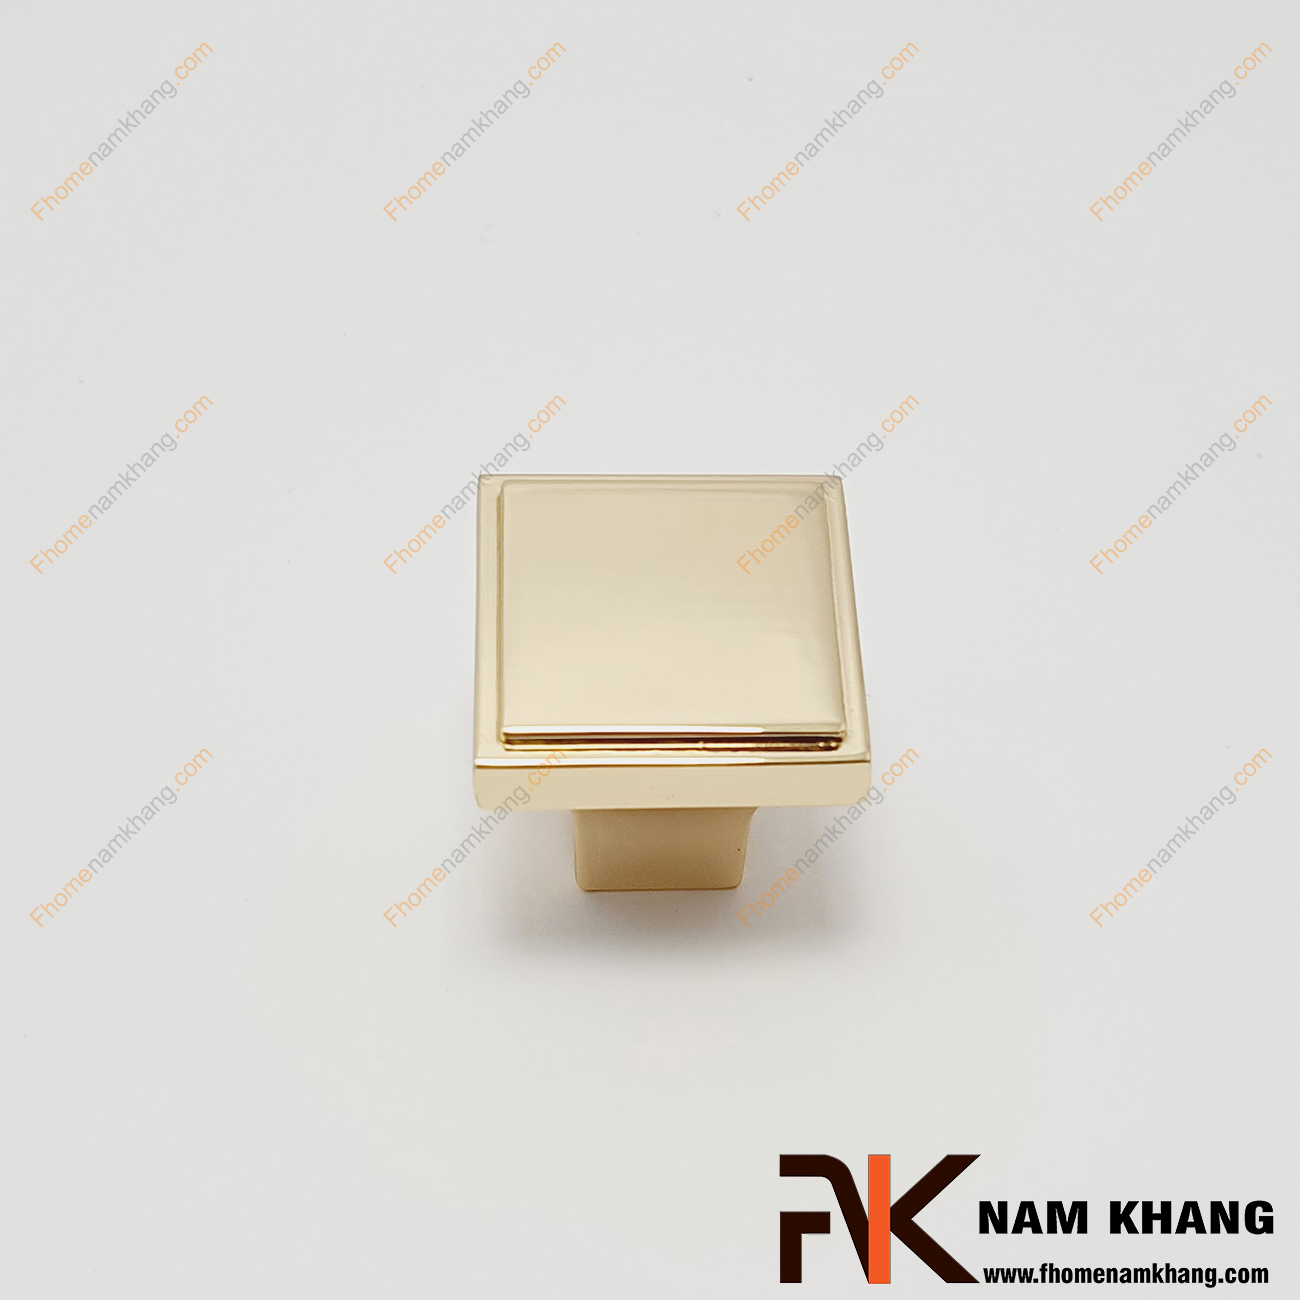 Núm cửa tủ vuông màu vàng bóng NK026-V, núm cửa tủ dạng vuông khối được lên màu trên chất liệu hợp kim cao cấp. Đây là sản phẩm được sử dụng nhiều trên các dạng tủ kệ bếp, ngăn kệ, ngăn tủ và các dạng tủ quần áo,...